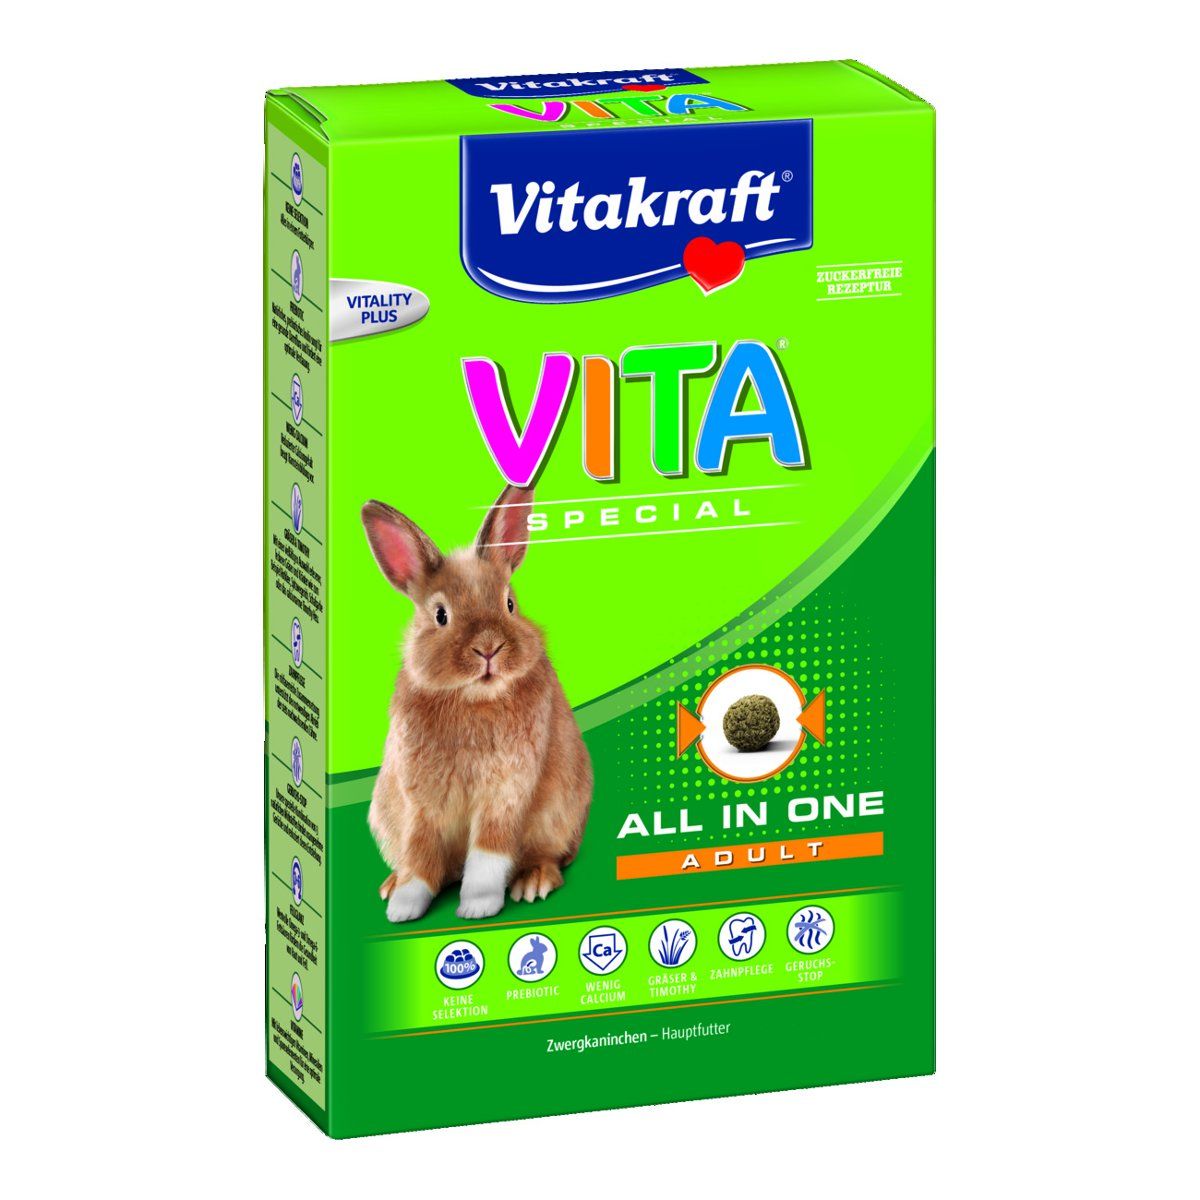 VITAKRAFT Vita Special Adult (Regular), Futter für Zwergkaninchen